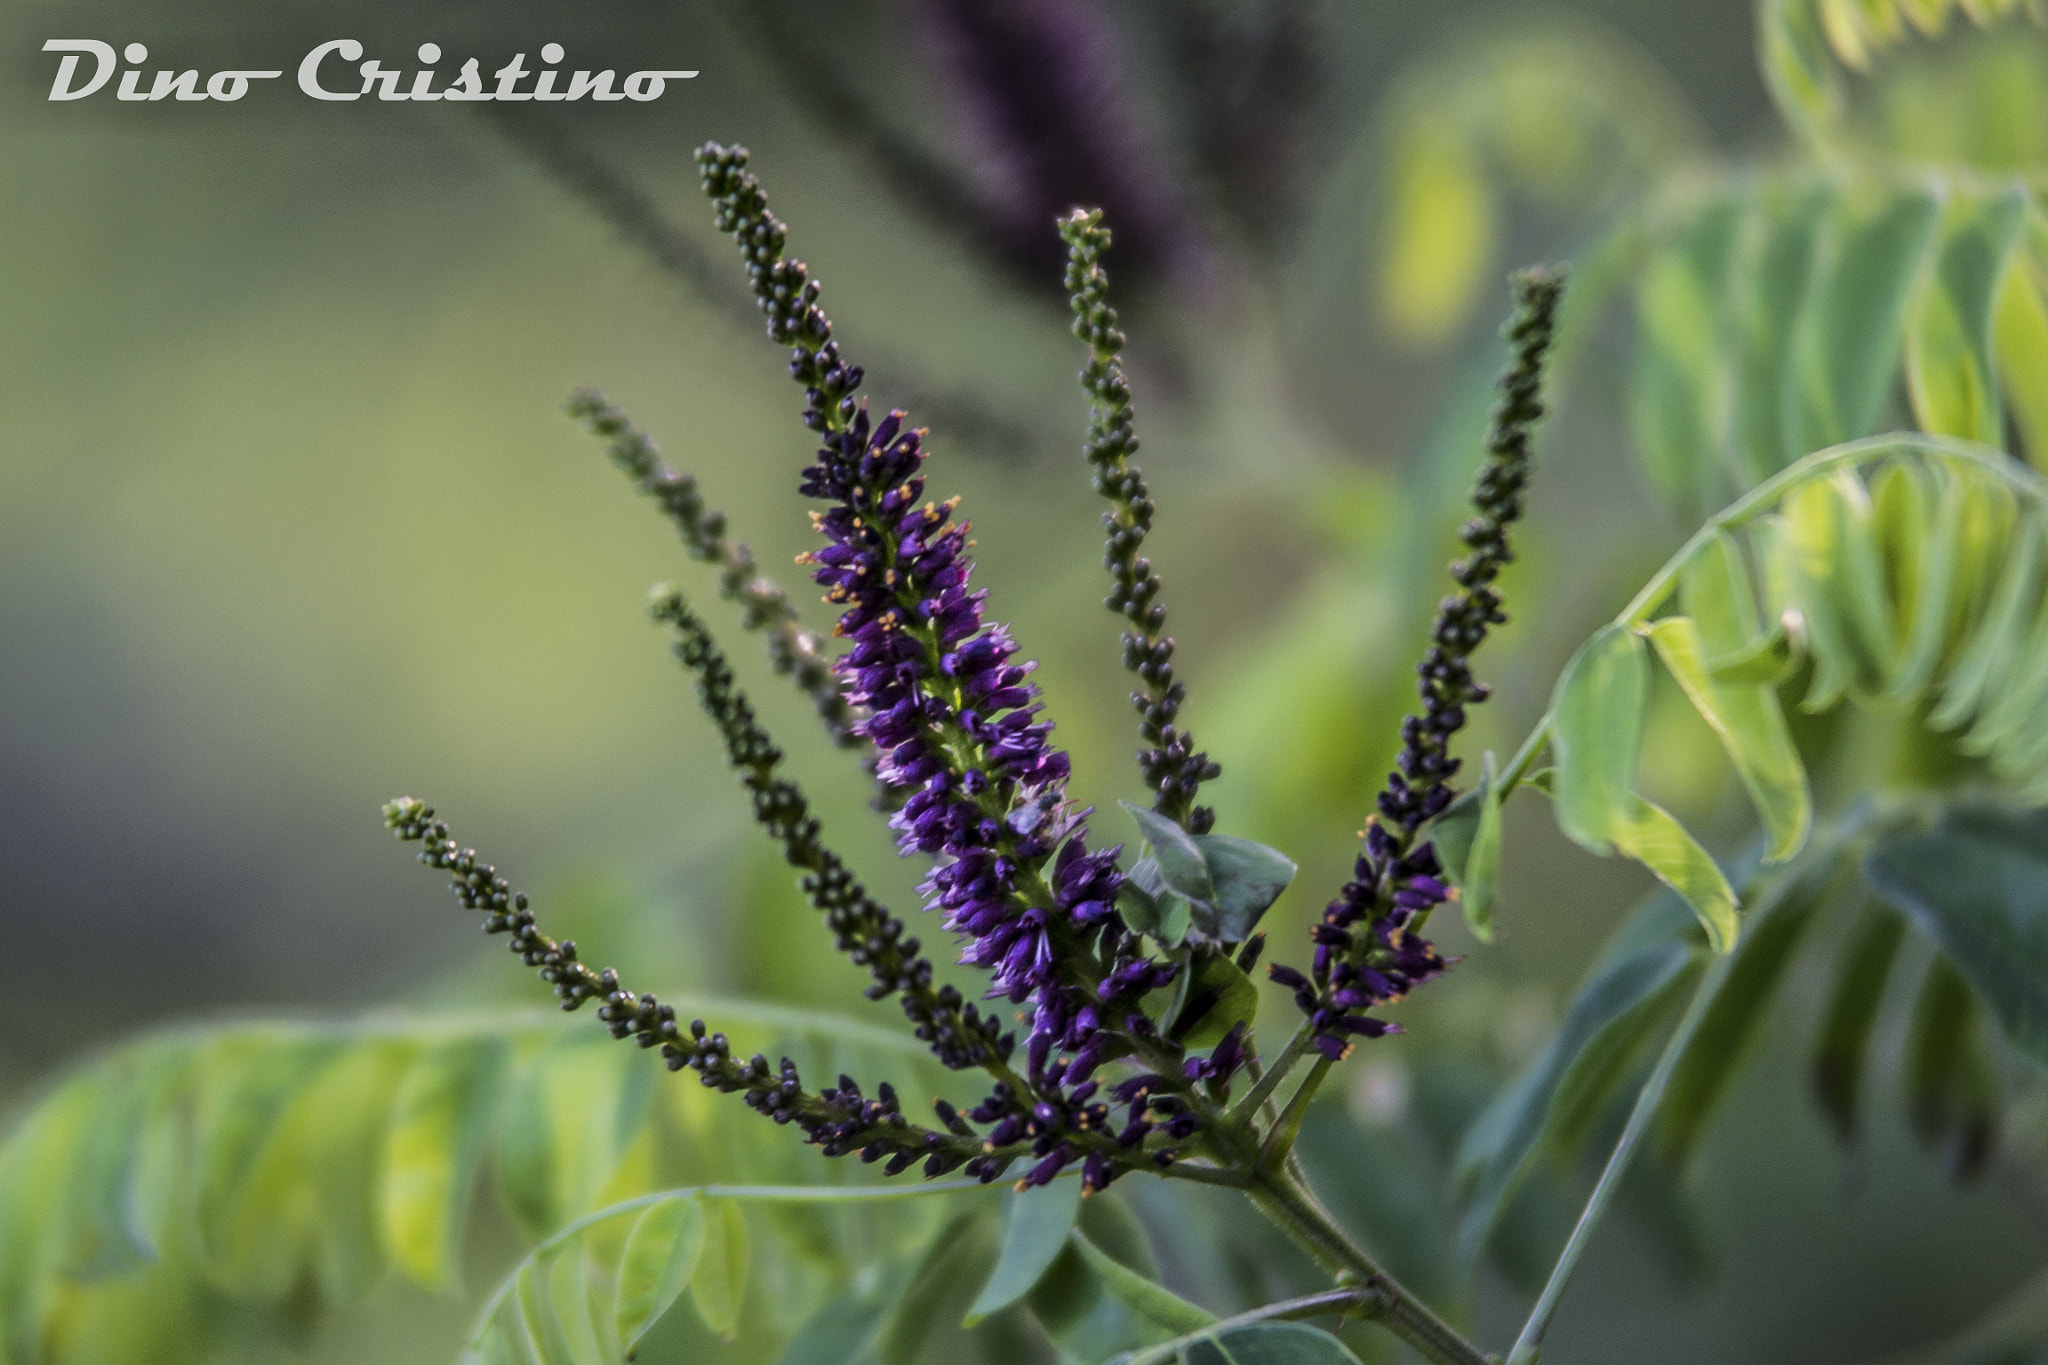 Nikon D3100 sample photo. Fabacee falso indaco amorpha fruticosa fiori dino cristino () photography